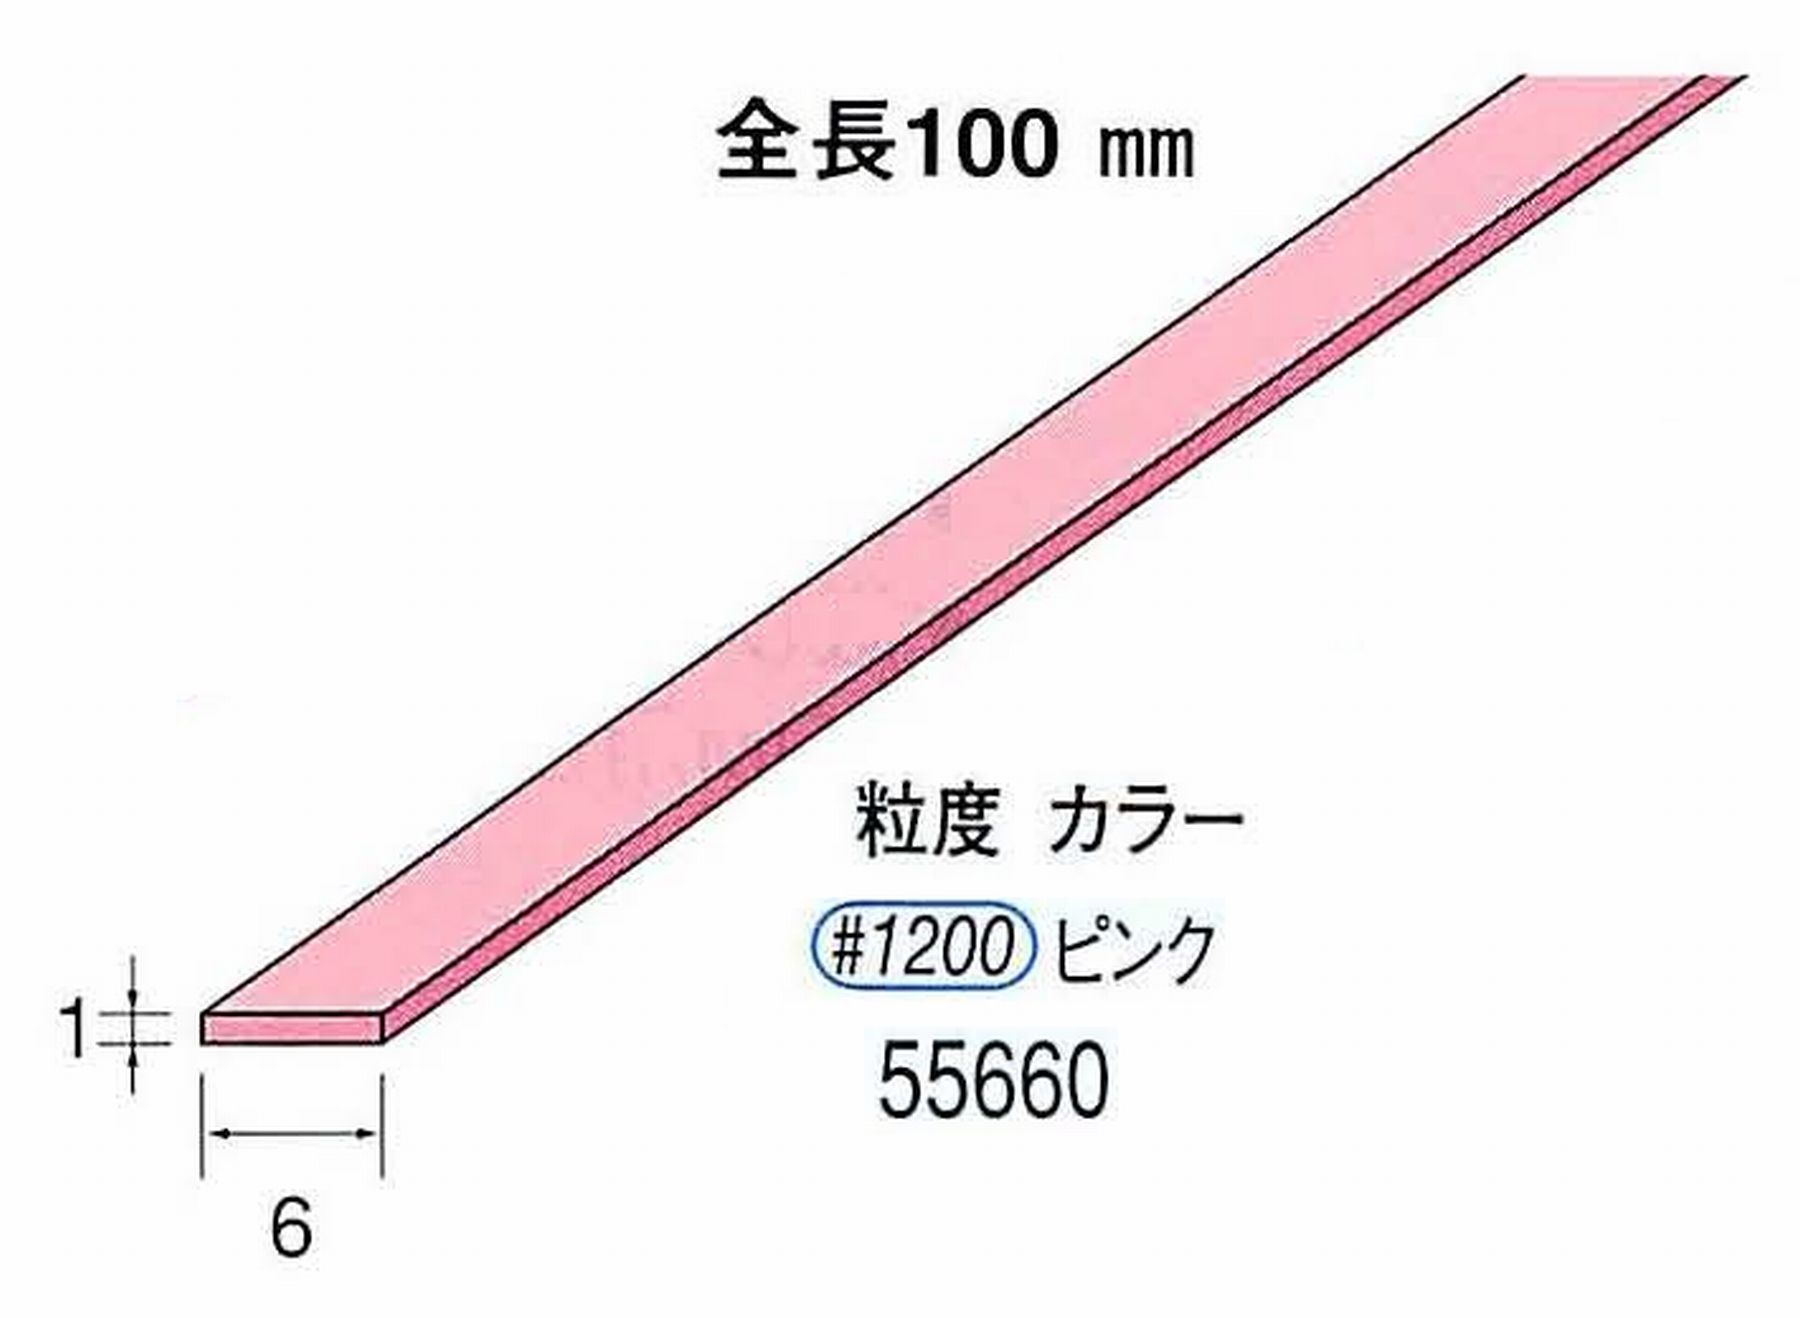 ナカニシ/NAKANISHI セラファイバー砥石 全長100mm ピンク 55660